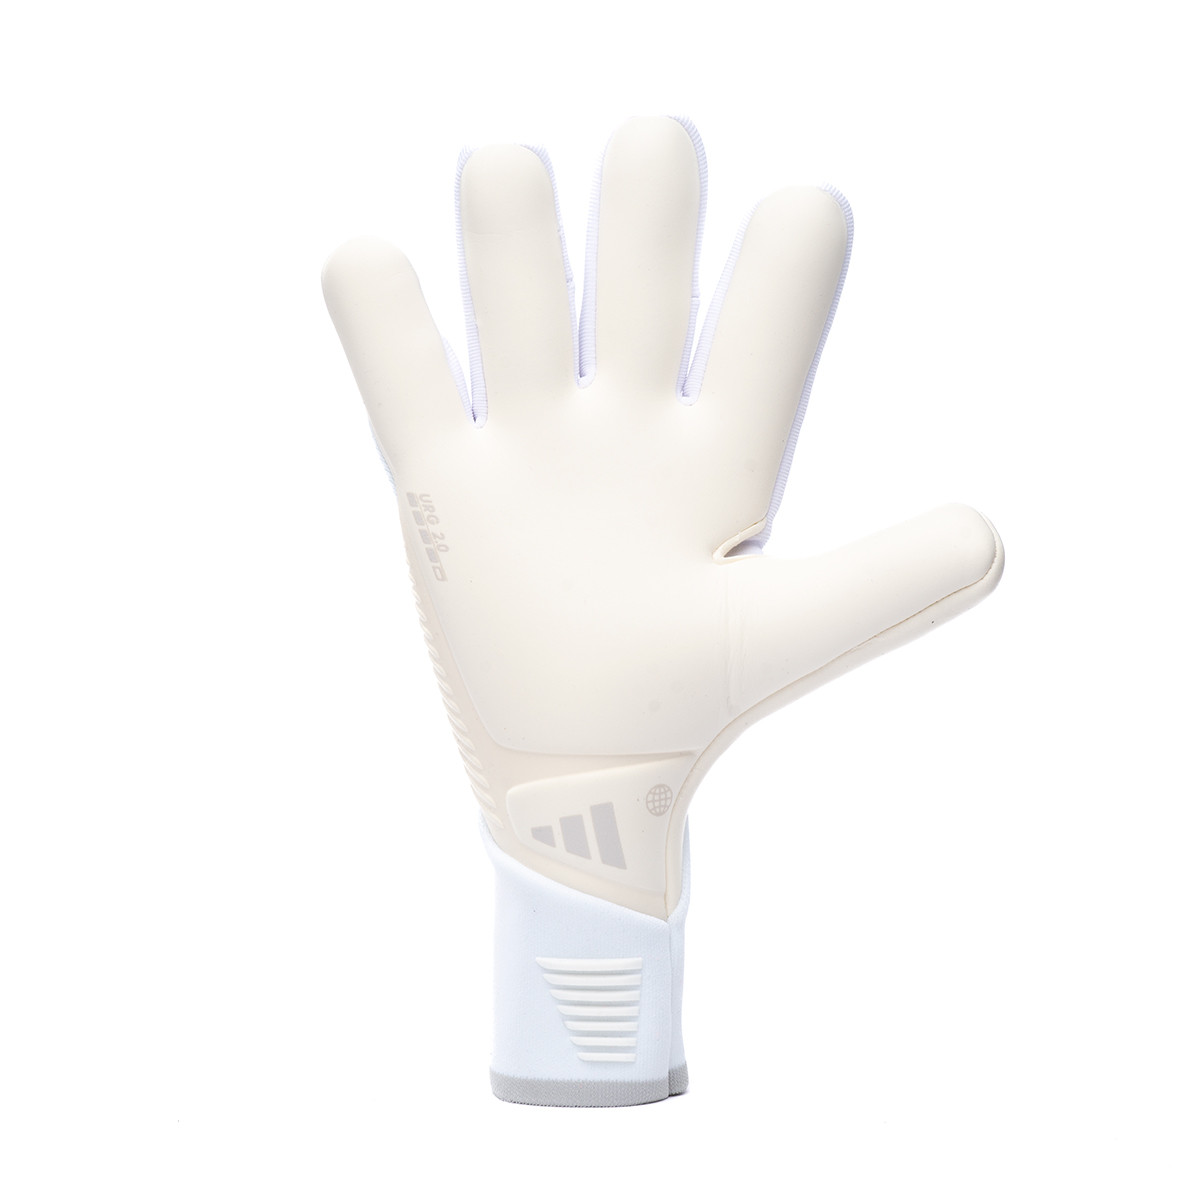 Accessories - Predator Training Gloves - White